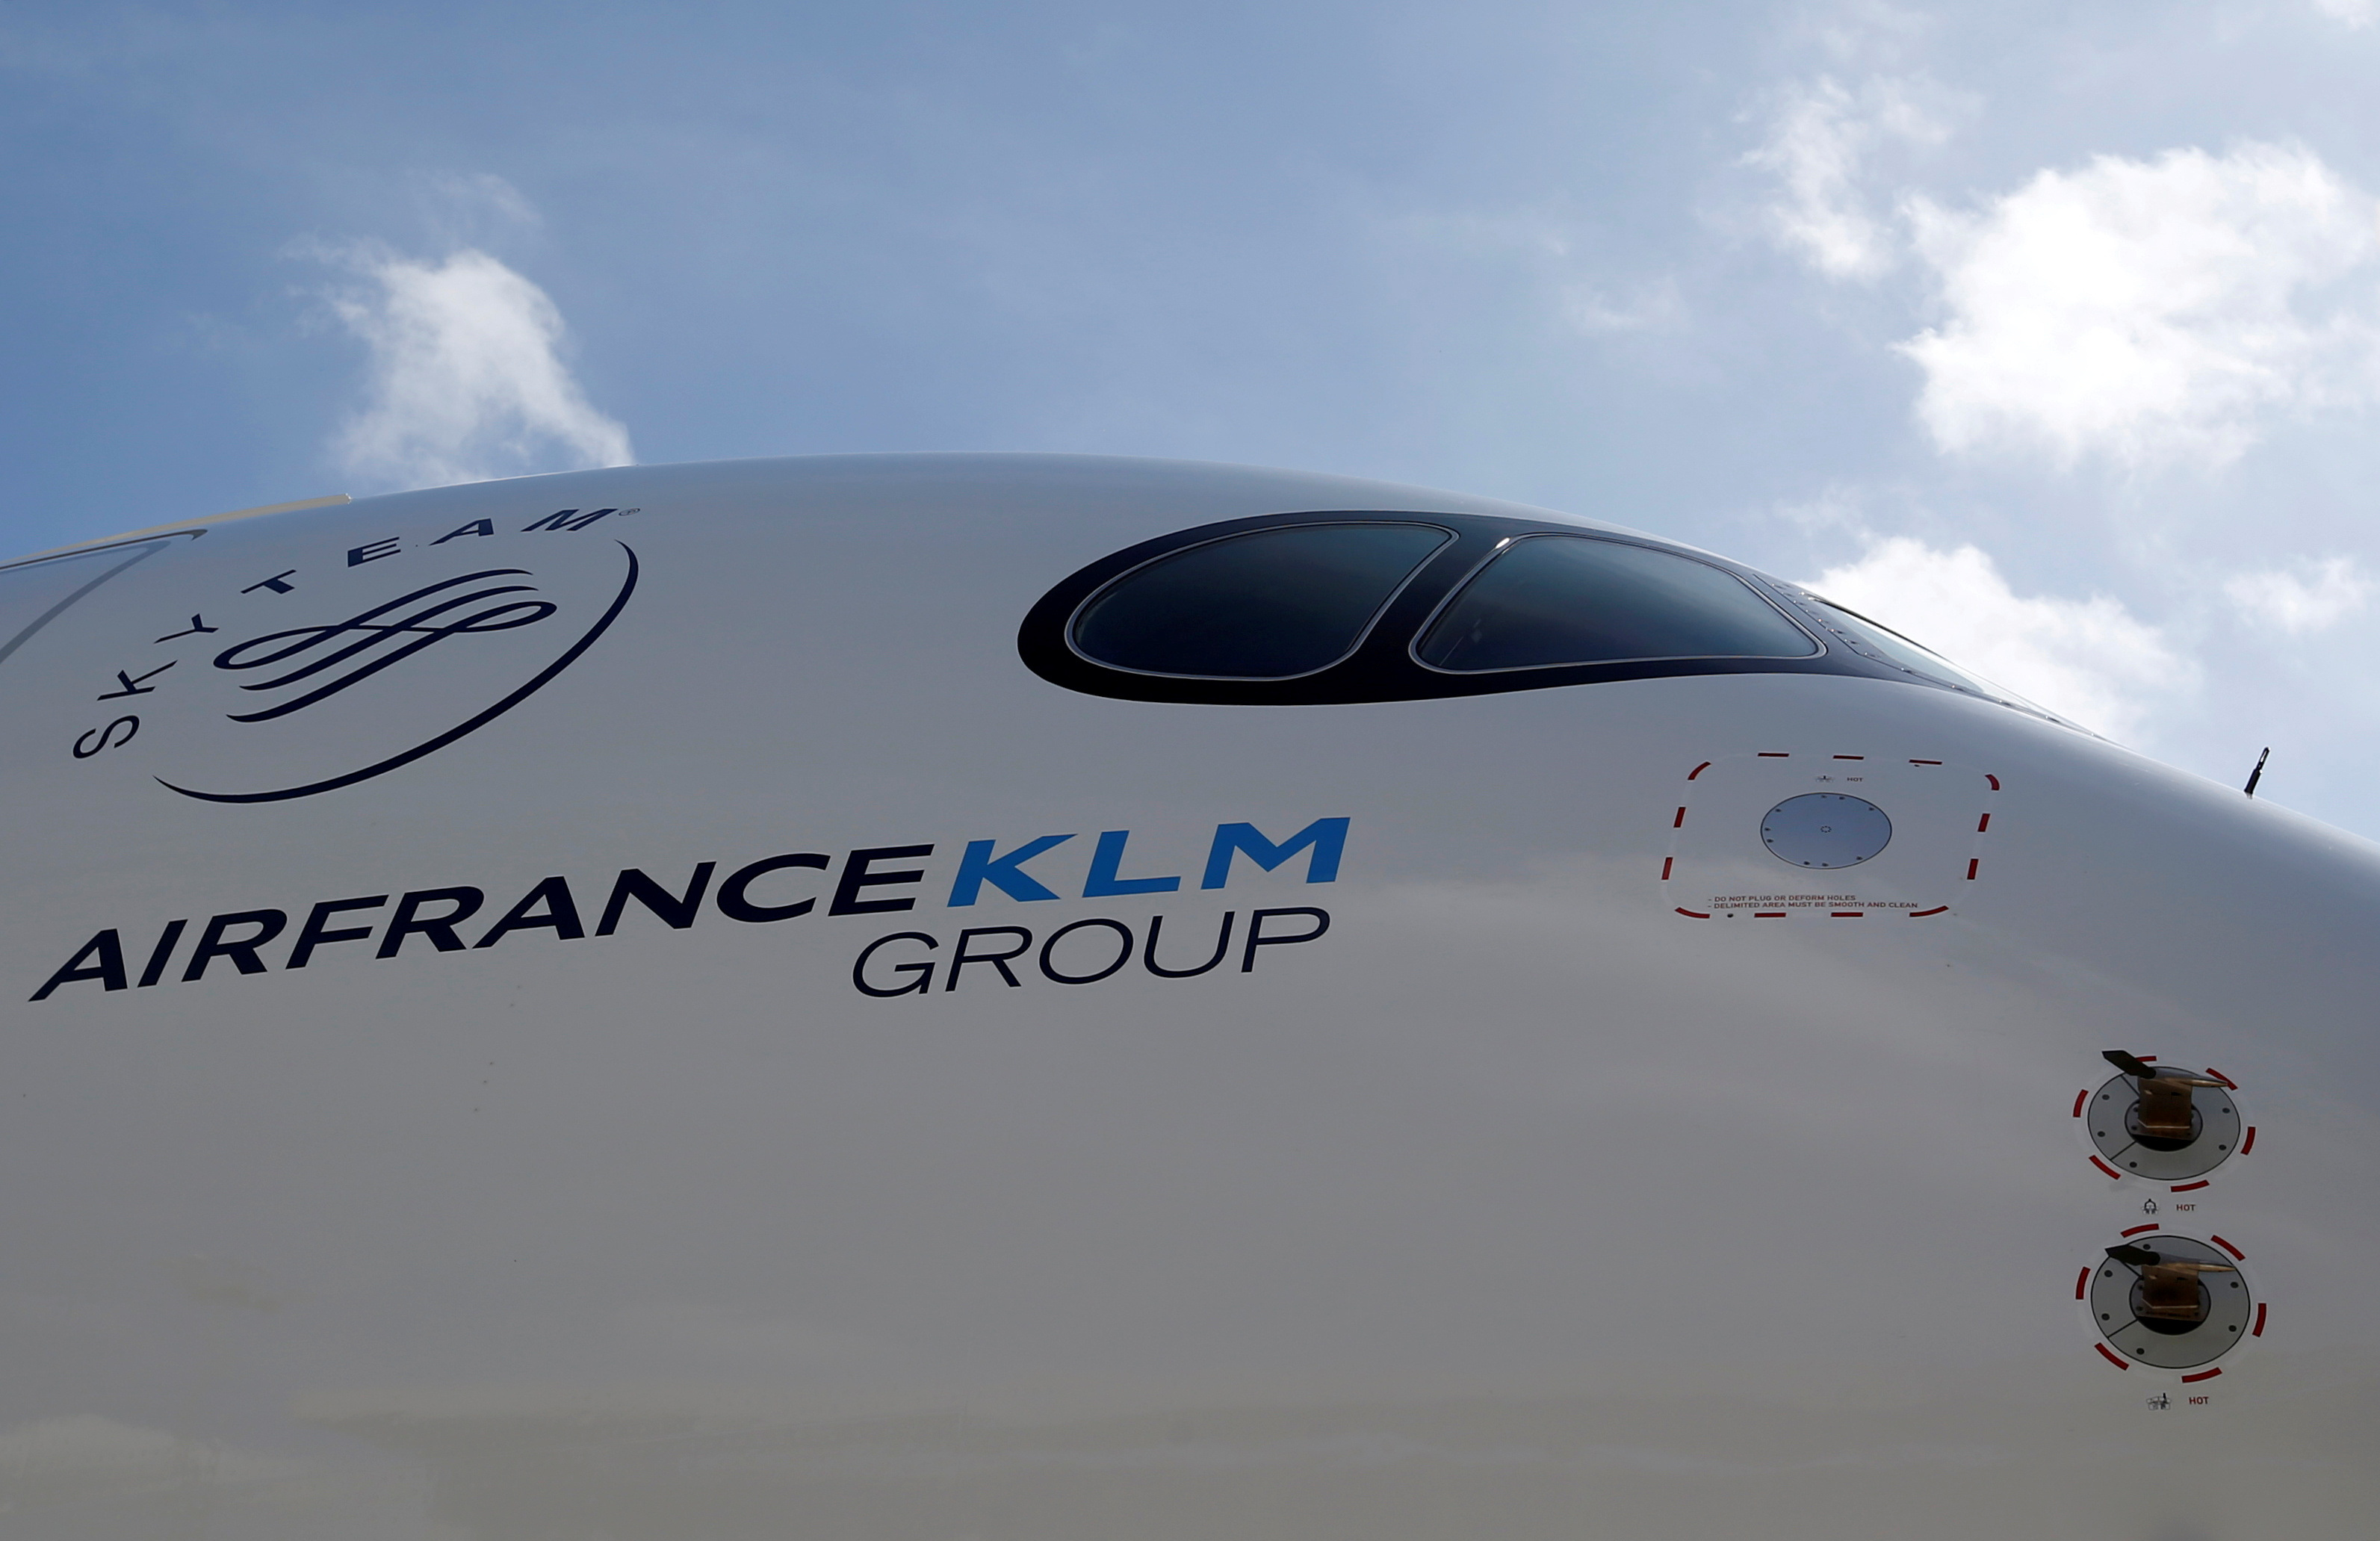 Avec 460 millions d'euros de bénéfice net, Air France-KLM fait mieux qu'avant la crise sanitaire